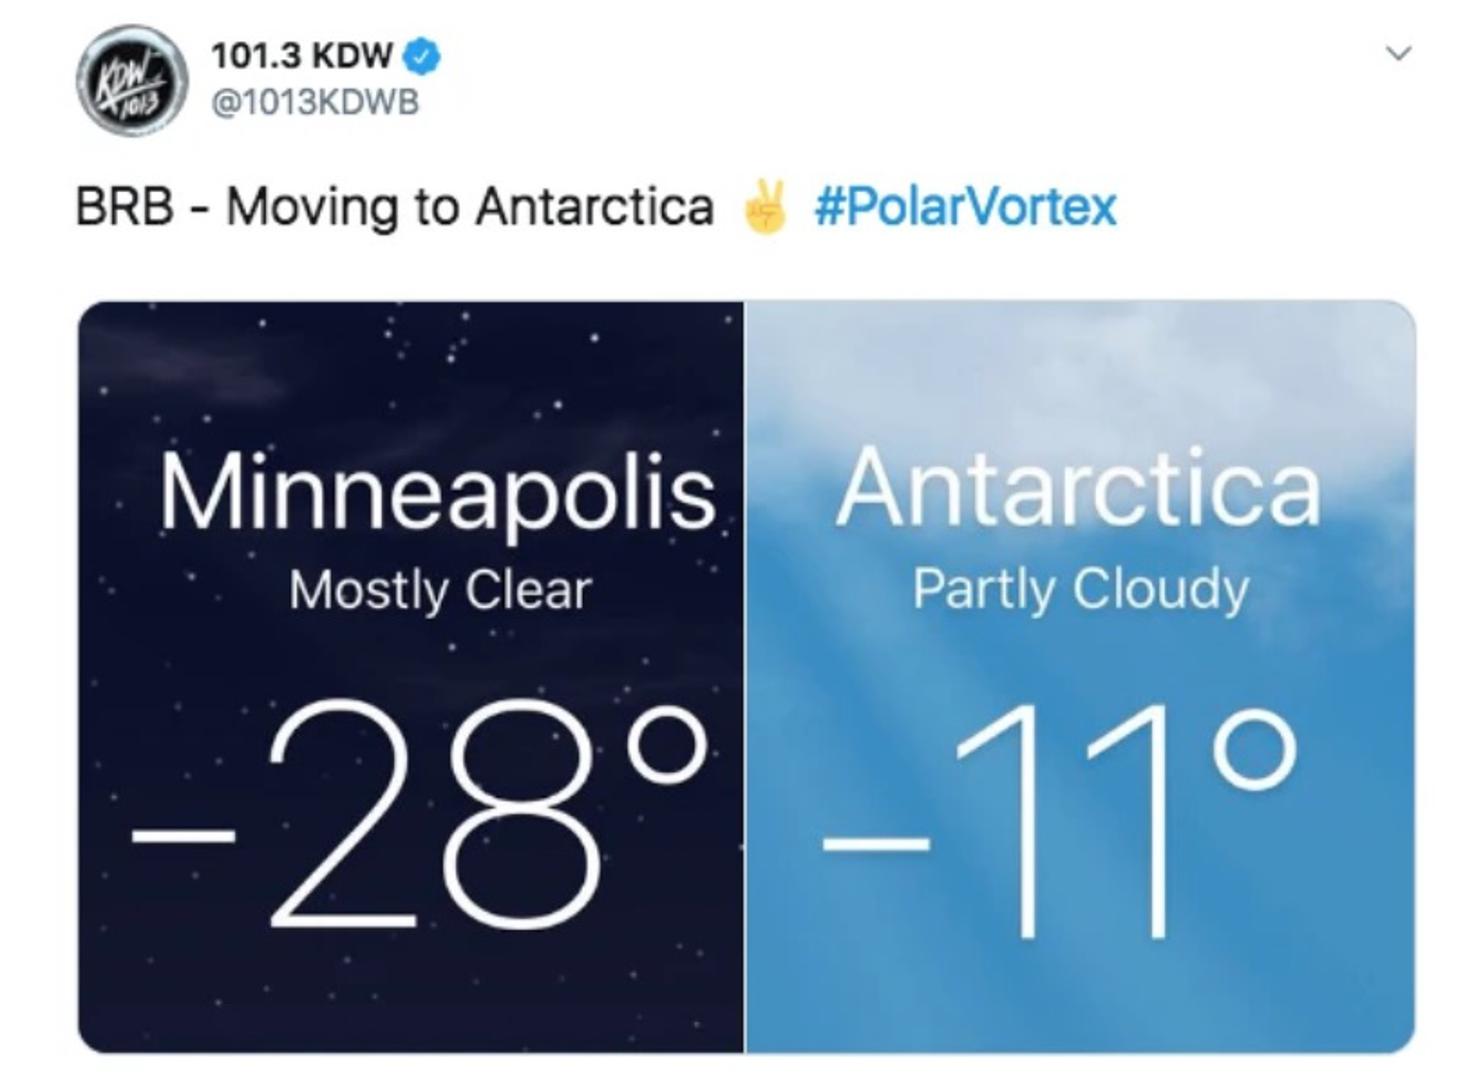 Čak se i temperature na Antarktici čine sasvim ugodnima, zar ne?